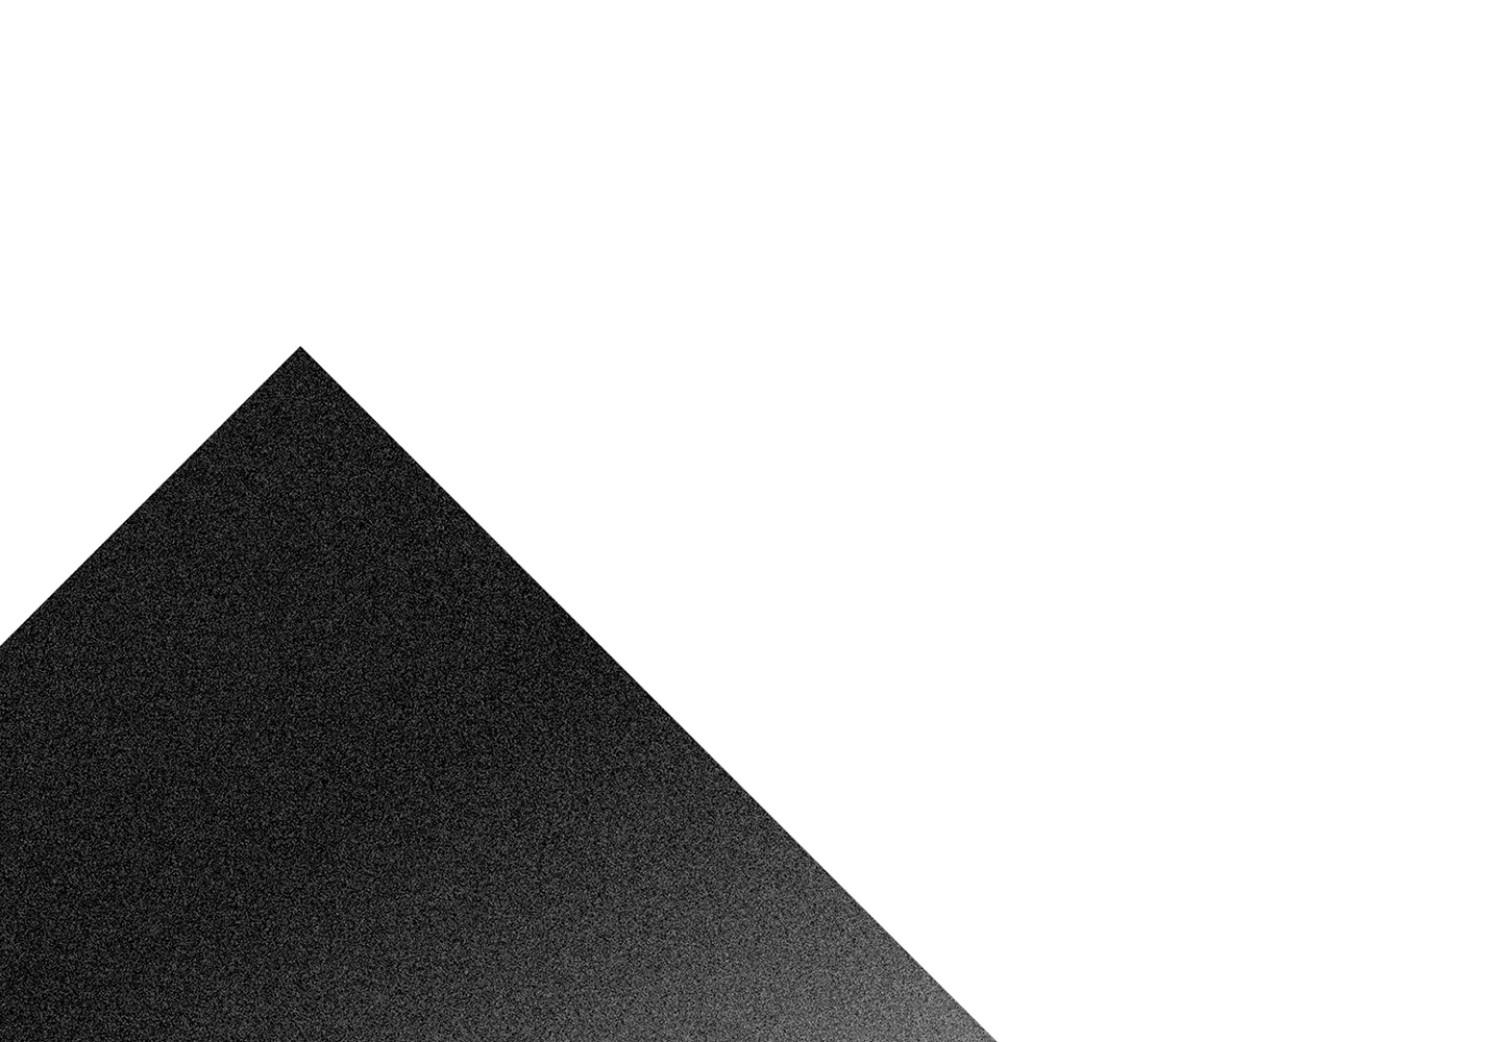 Poster Cruz sobre blanco - composición abstracta geométrica en blanco y negro